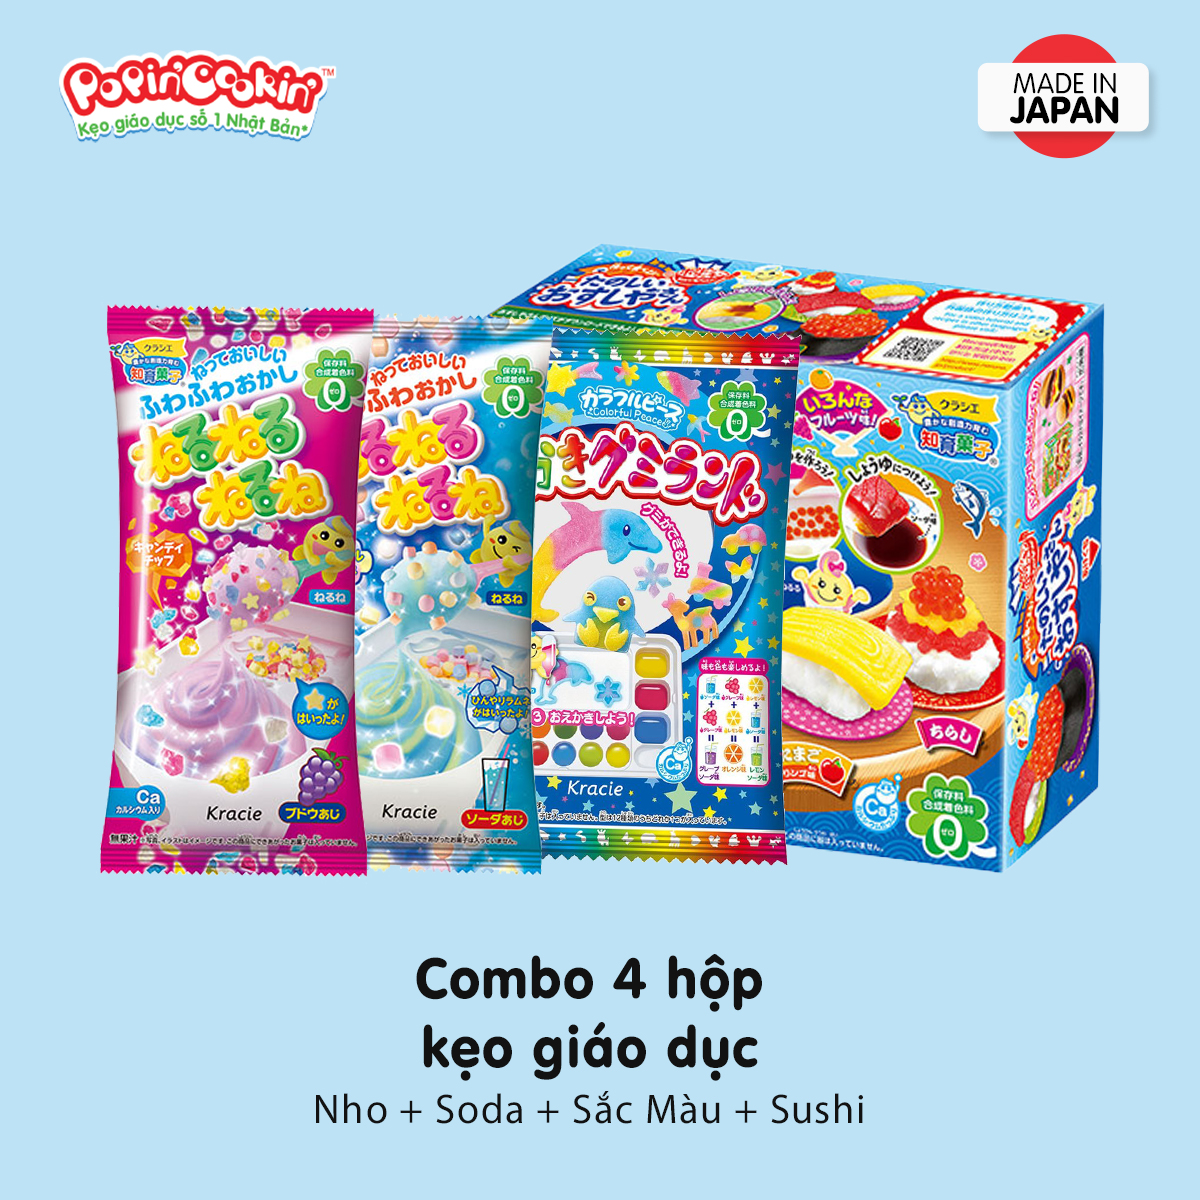 Combo 4 hộp kẹo sáng tạo Popin Cookin đồ chơi ăn được gồm : Thế Giới Sắc Màu + 3 hộp kẹo tự chọn chính hãng